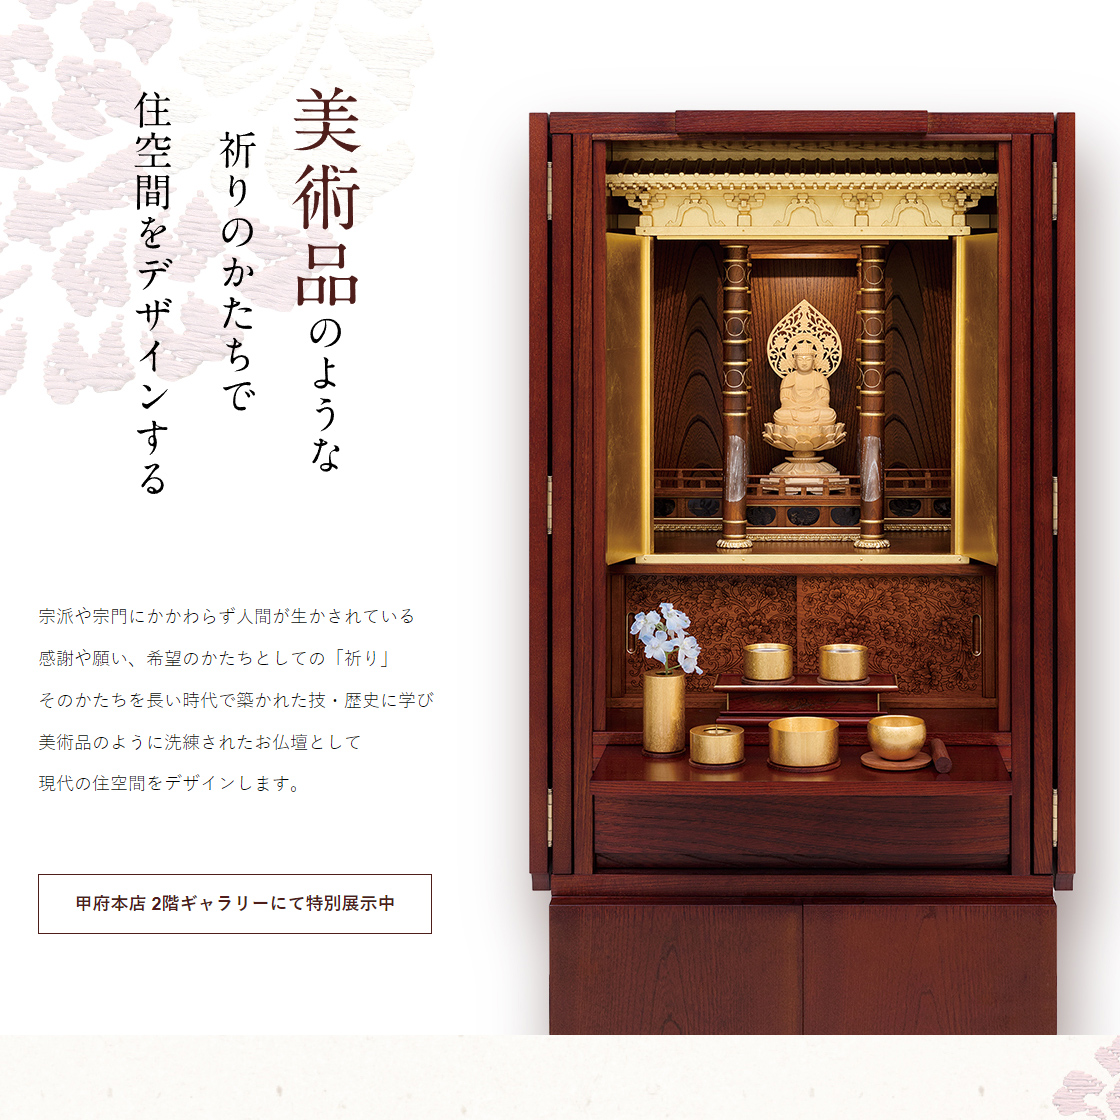 特別展示されたお仏壇の特集ページ